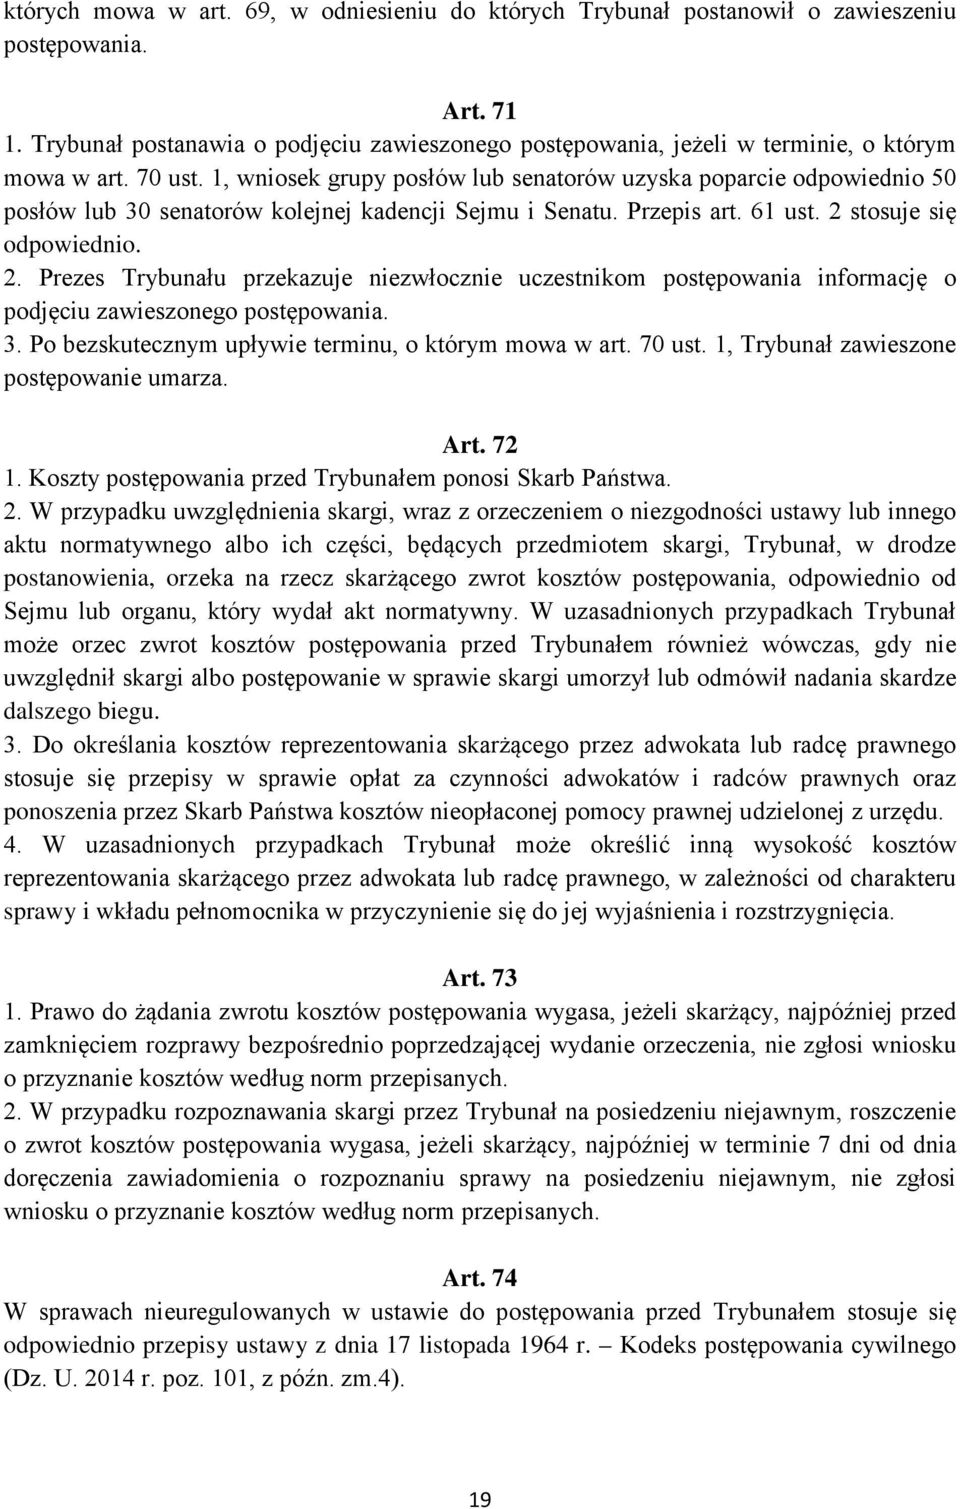 1, wniosek grupy posłów lub senatorów uzyska poparcie odpowiednio 50 posłów lub 30 senatorów kolejnej kadencji Sejmu i Senatu. Przepis art. 61 ust. 2 